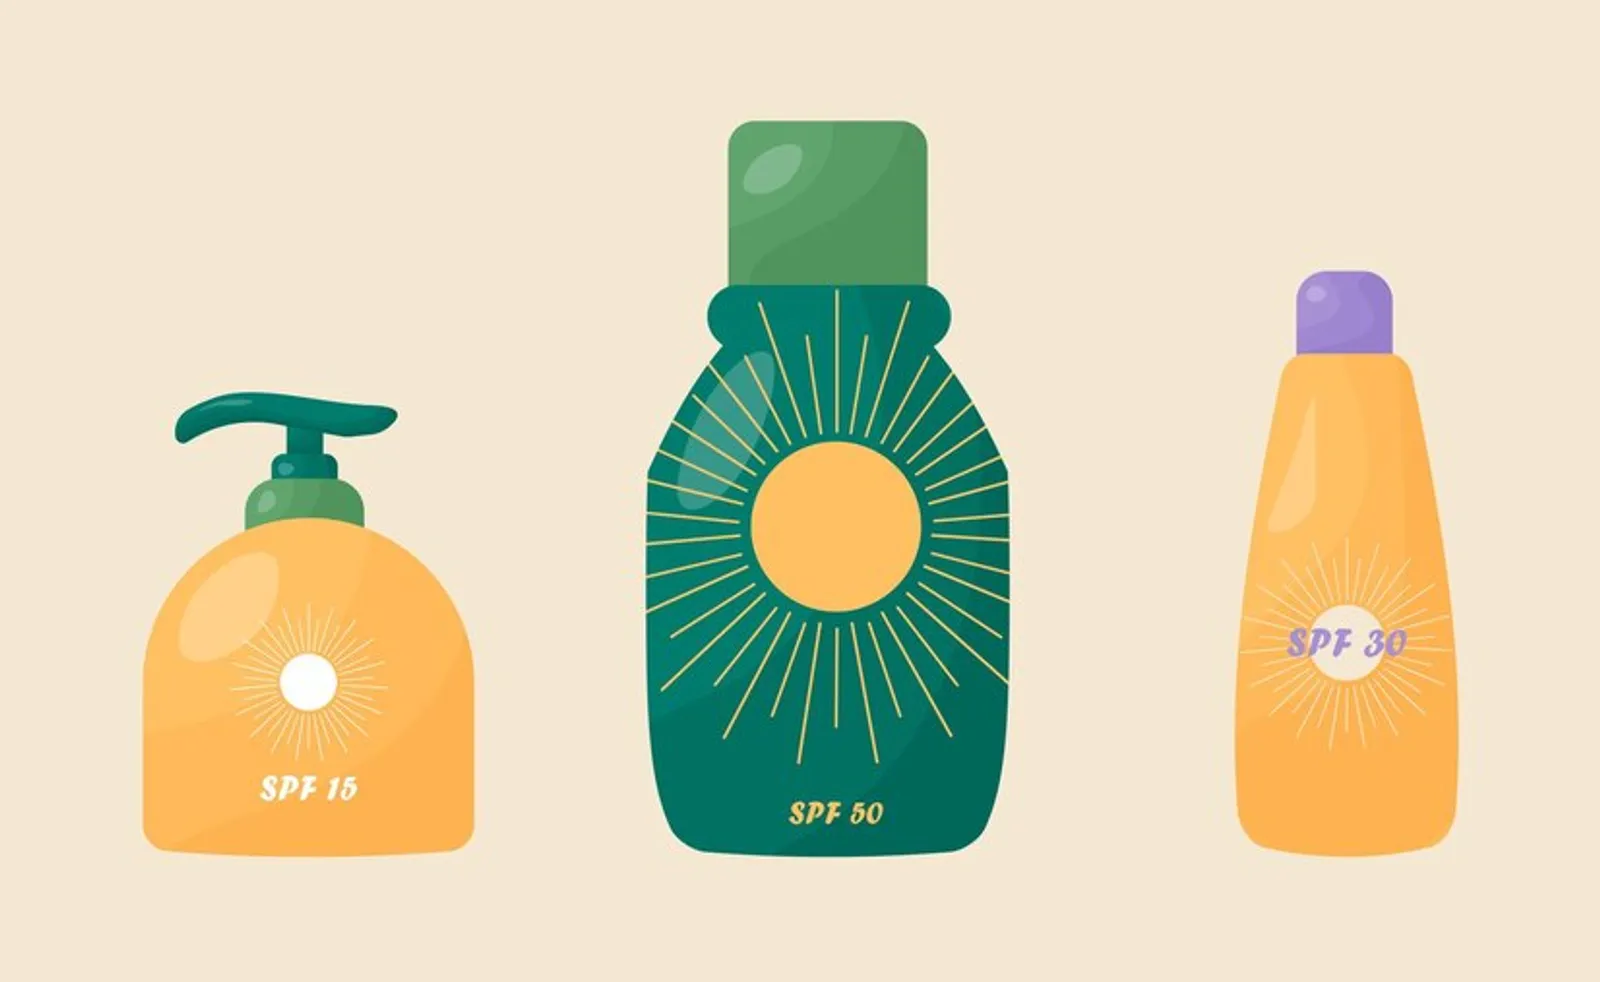 Cek Dulu 5 Hal Ini Sebelum Membeli Sunscreen, Biar Nggak Salah Pilih!